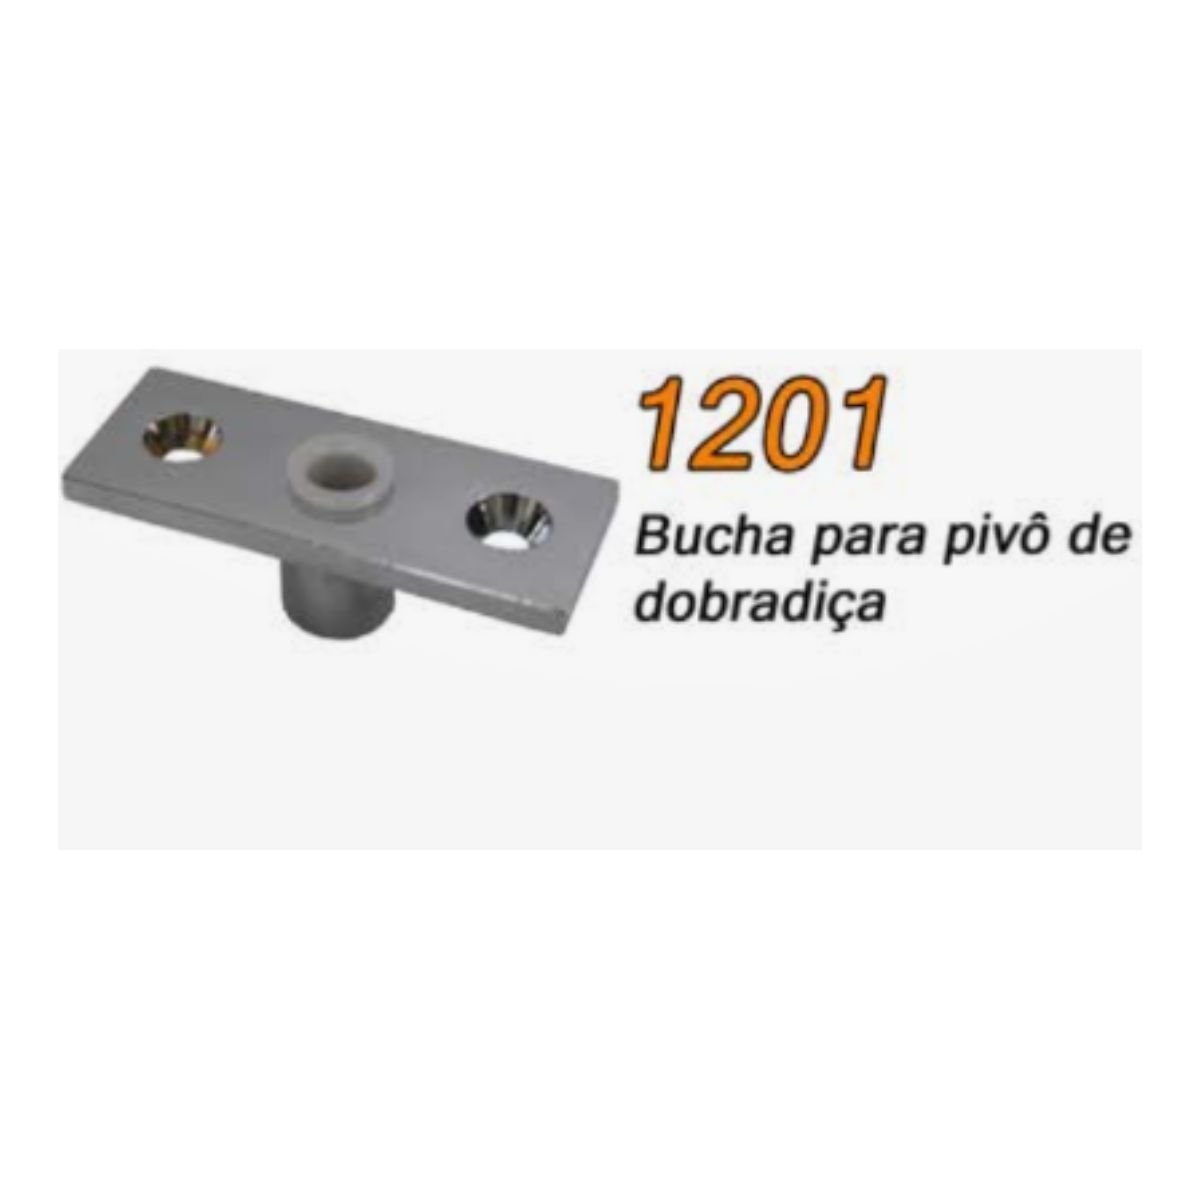 1201 - Bucha para pivô de dobradiça superior de porta pivotante - 2